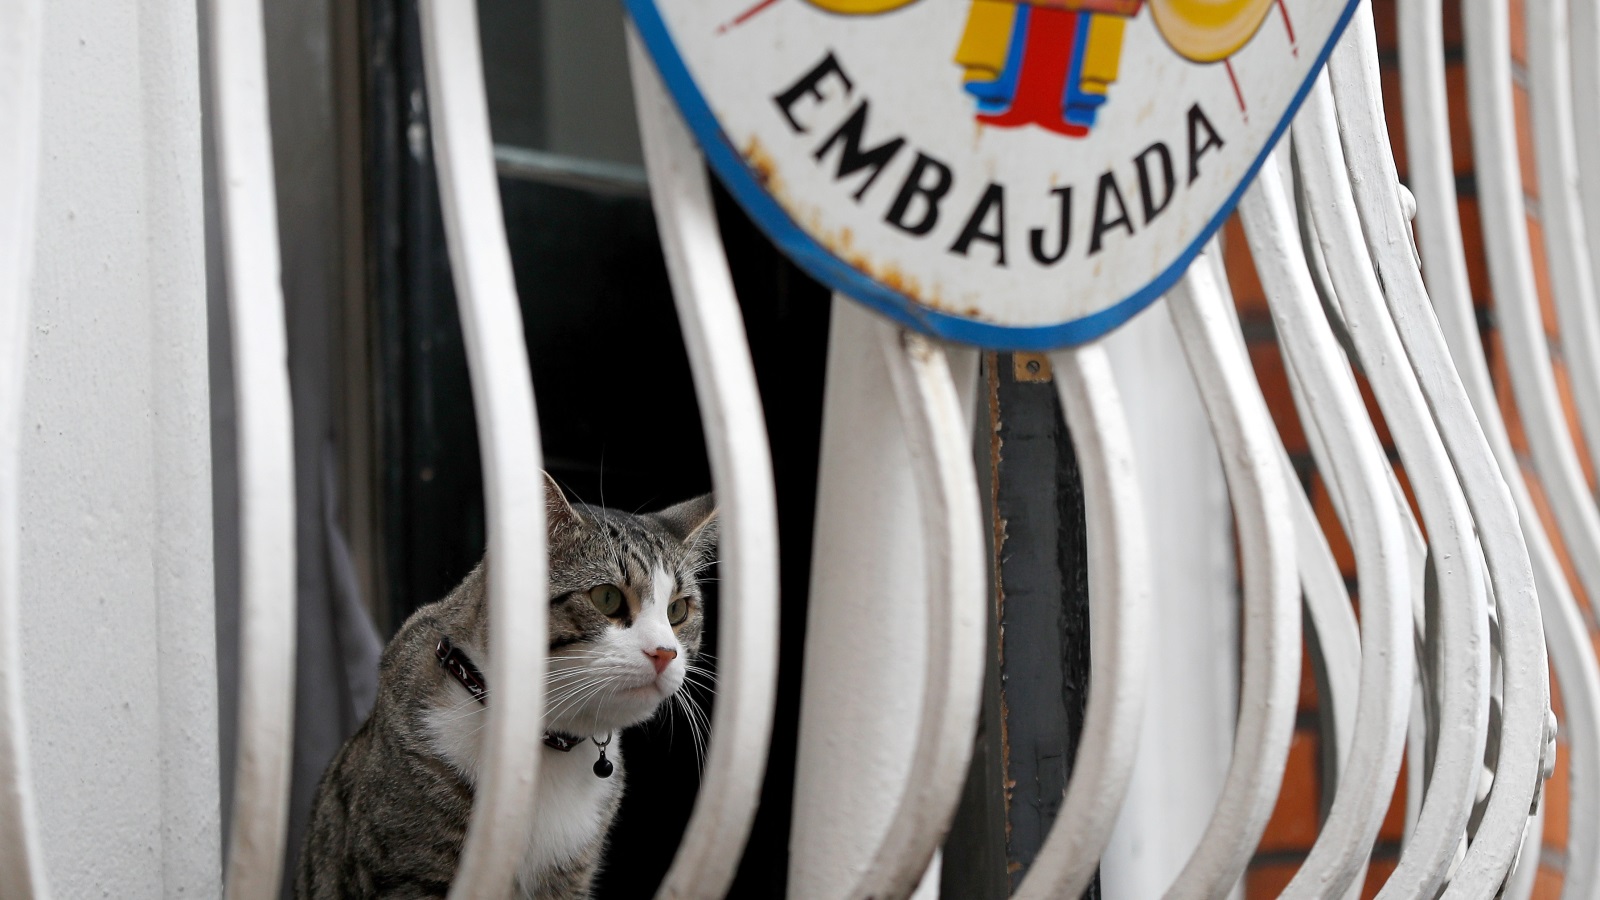 ‪قطة أسانج تطل من إحدى نوافذ السفارة الإكوادورية بلندن (رويترز)‬ قطة أسانج تطل من إحدى نوافذ السفارة الإكوادورية بلندن (رويترز)